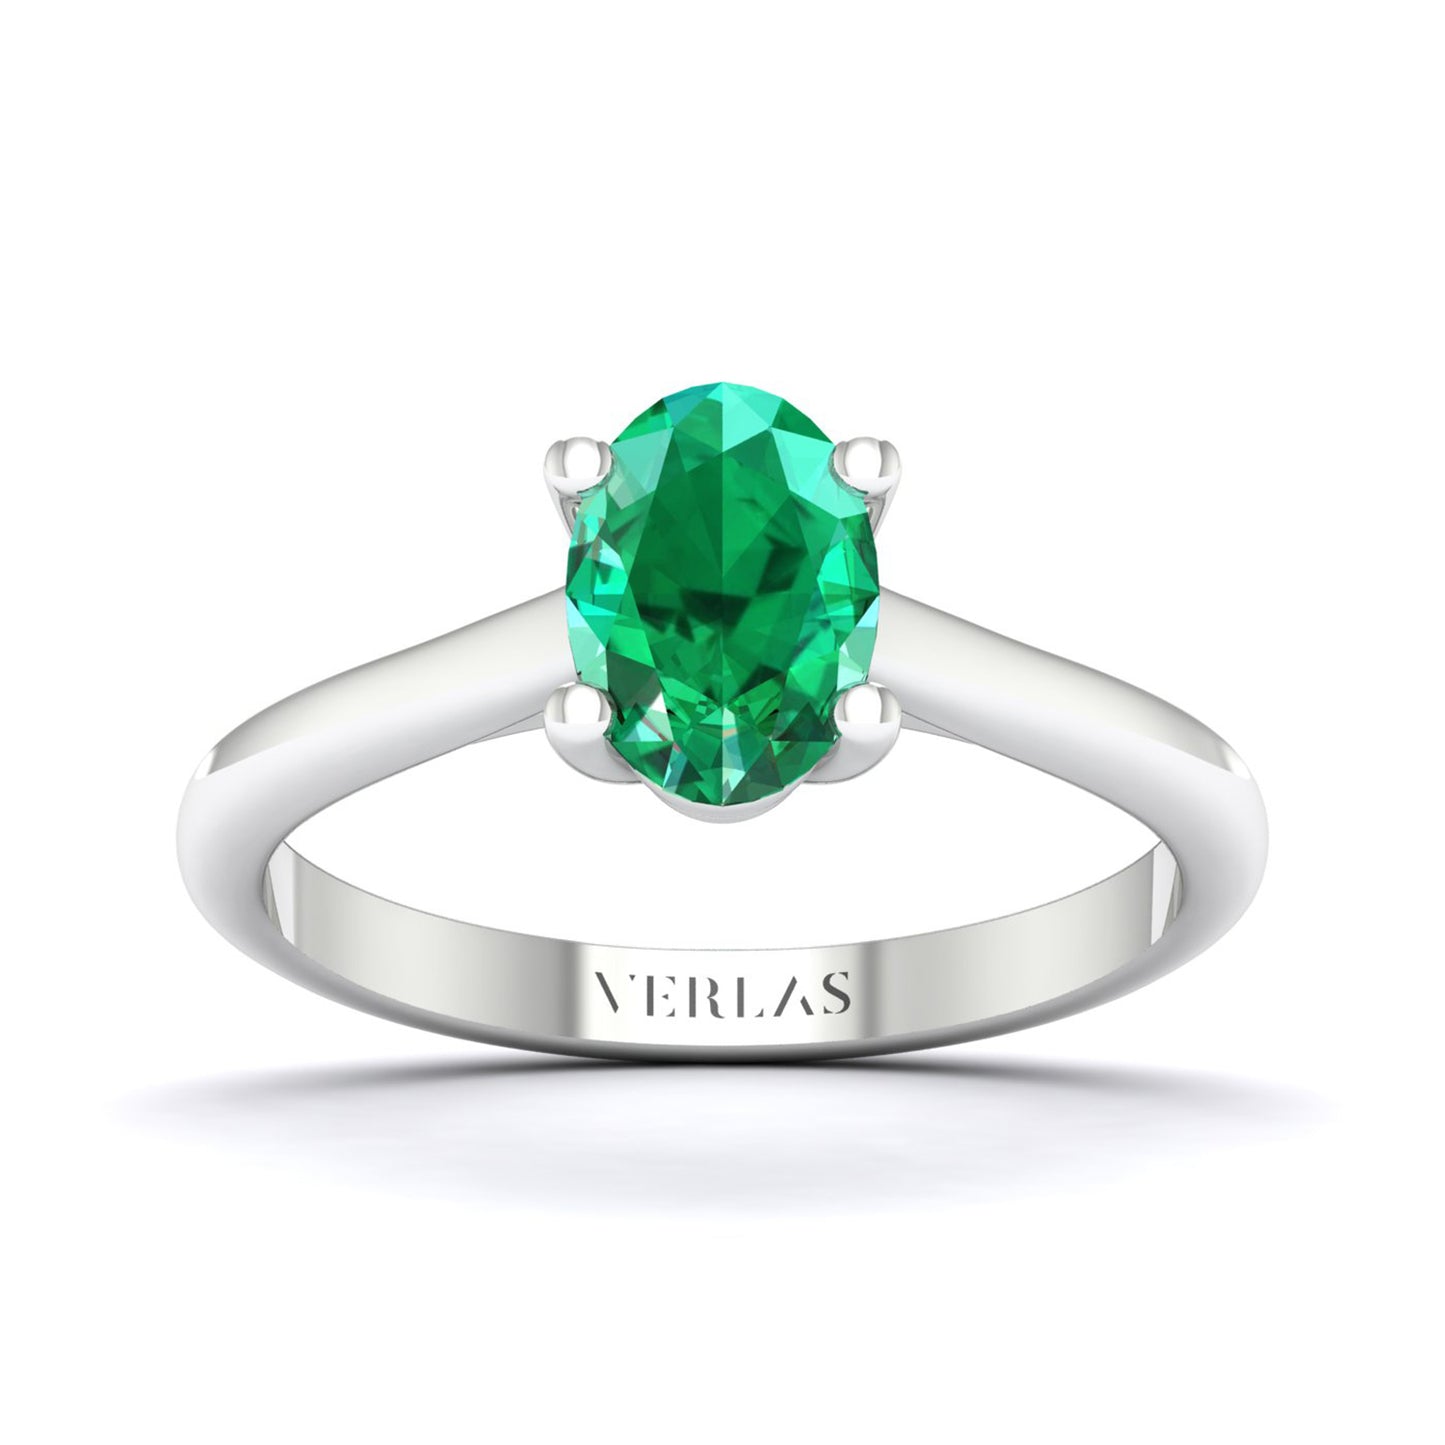 Ellipse Gemstone Chalice Ring_Product Angle_Emerald - 1